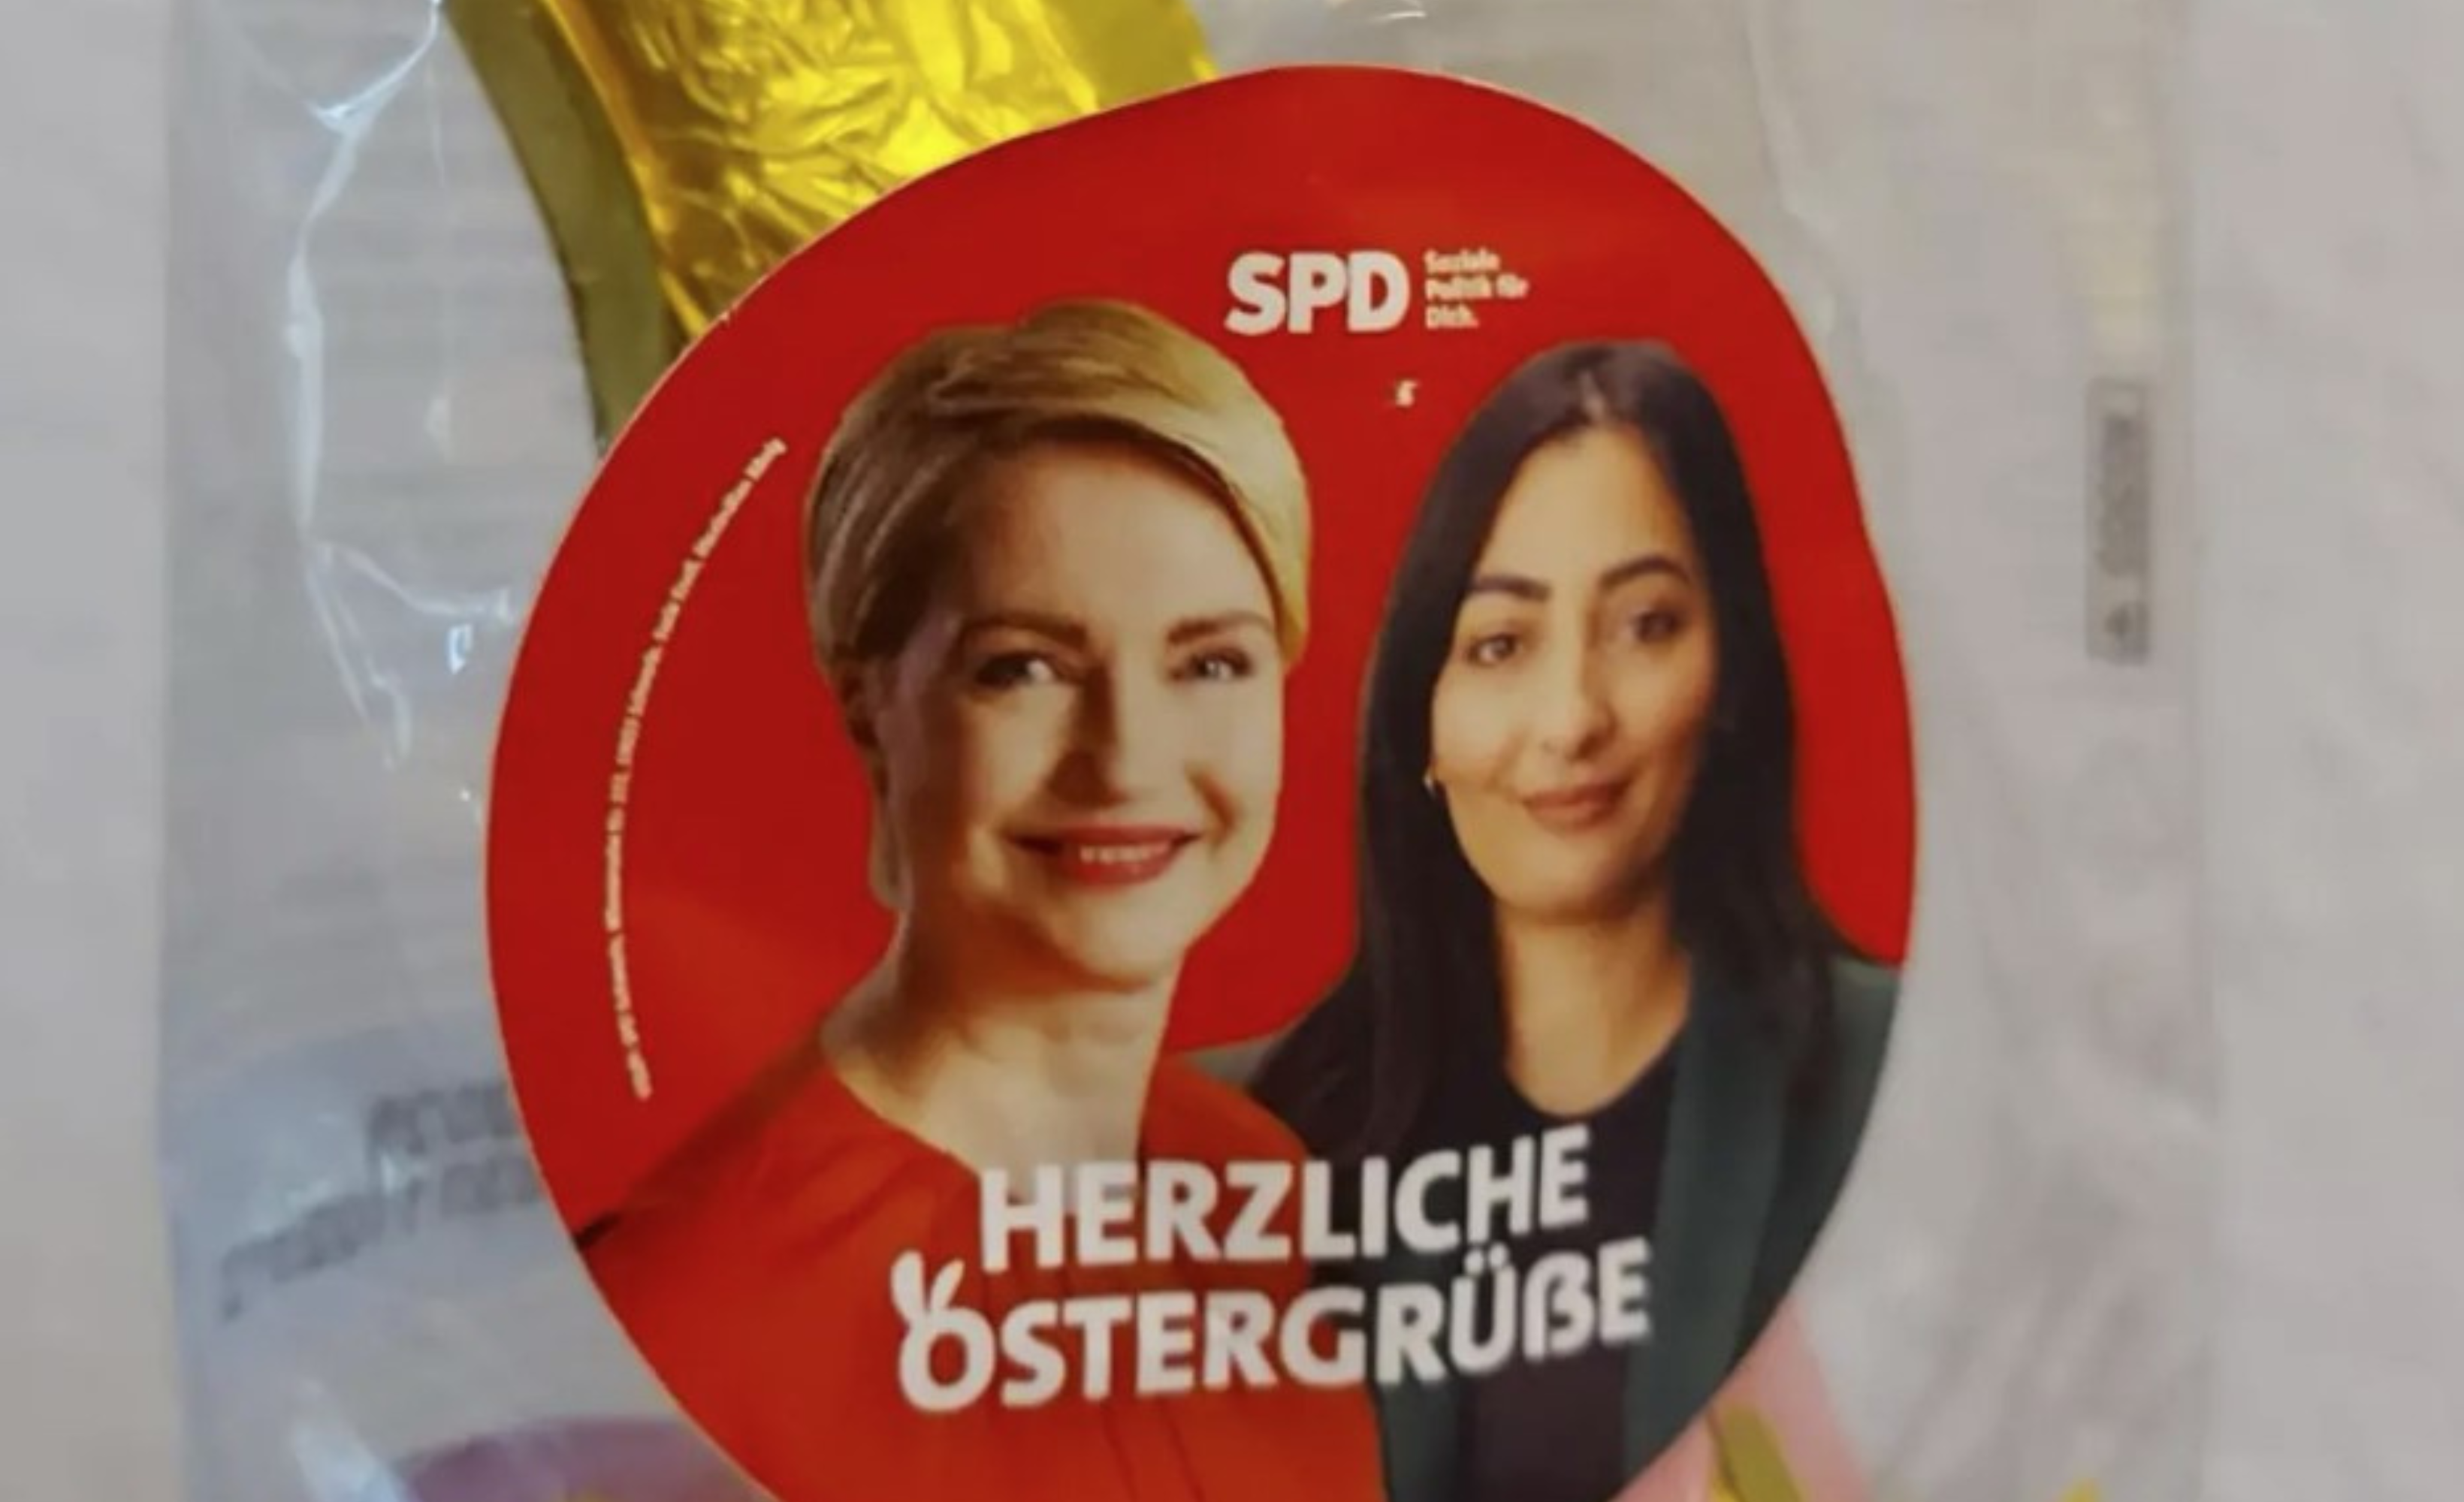 Schokohasen mit SPD-Logo: Nach Anfrage von Stadtvertreter Gajek – OB Badenschier antwortet auf Fragen zu Osterhasen-Verteilaktion 